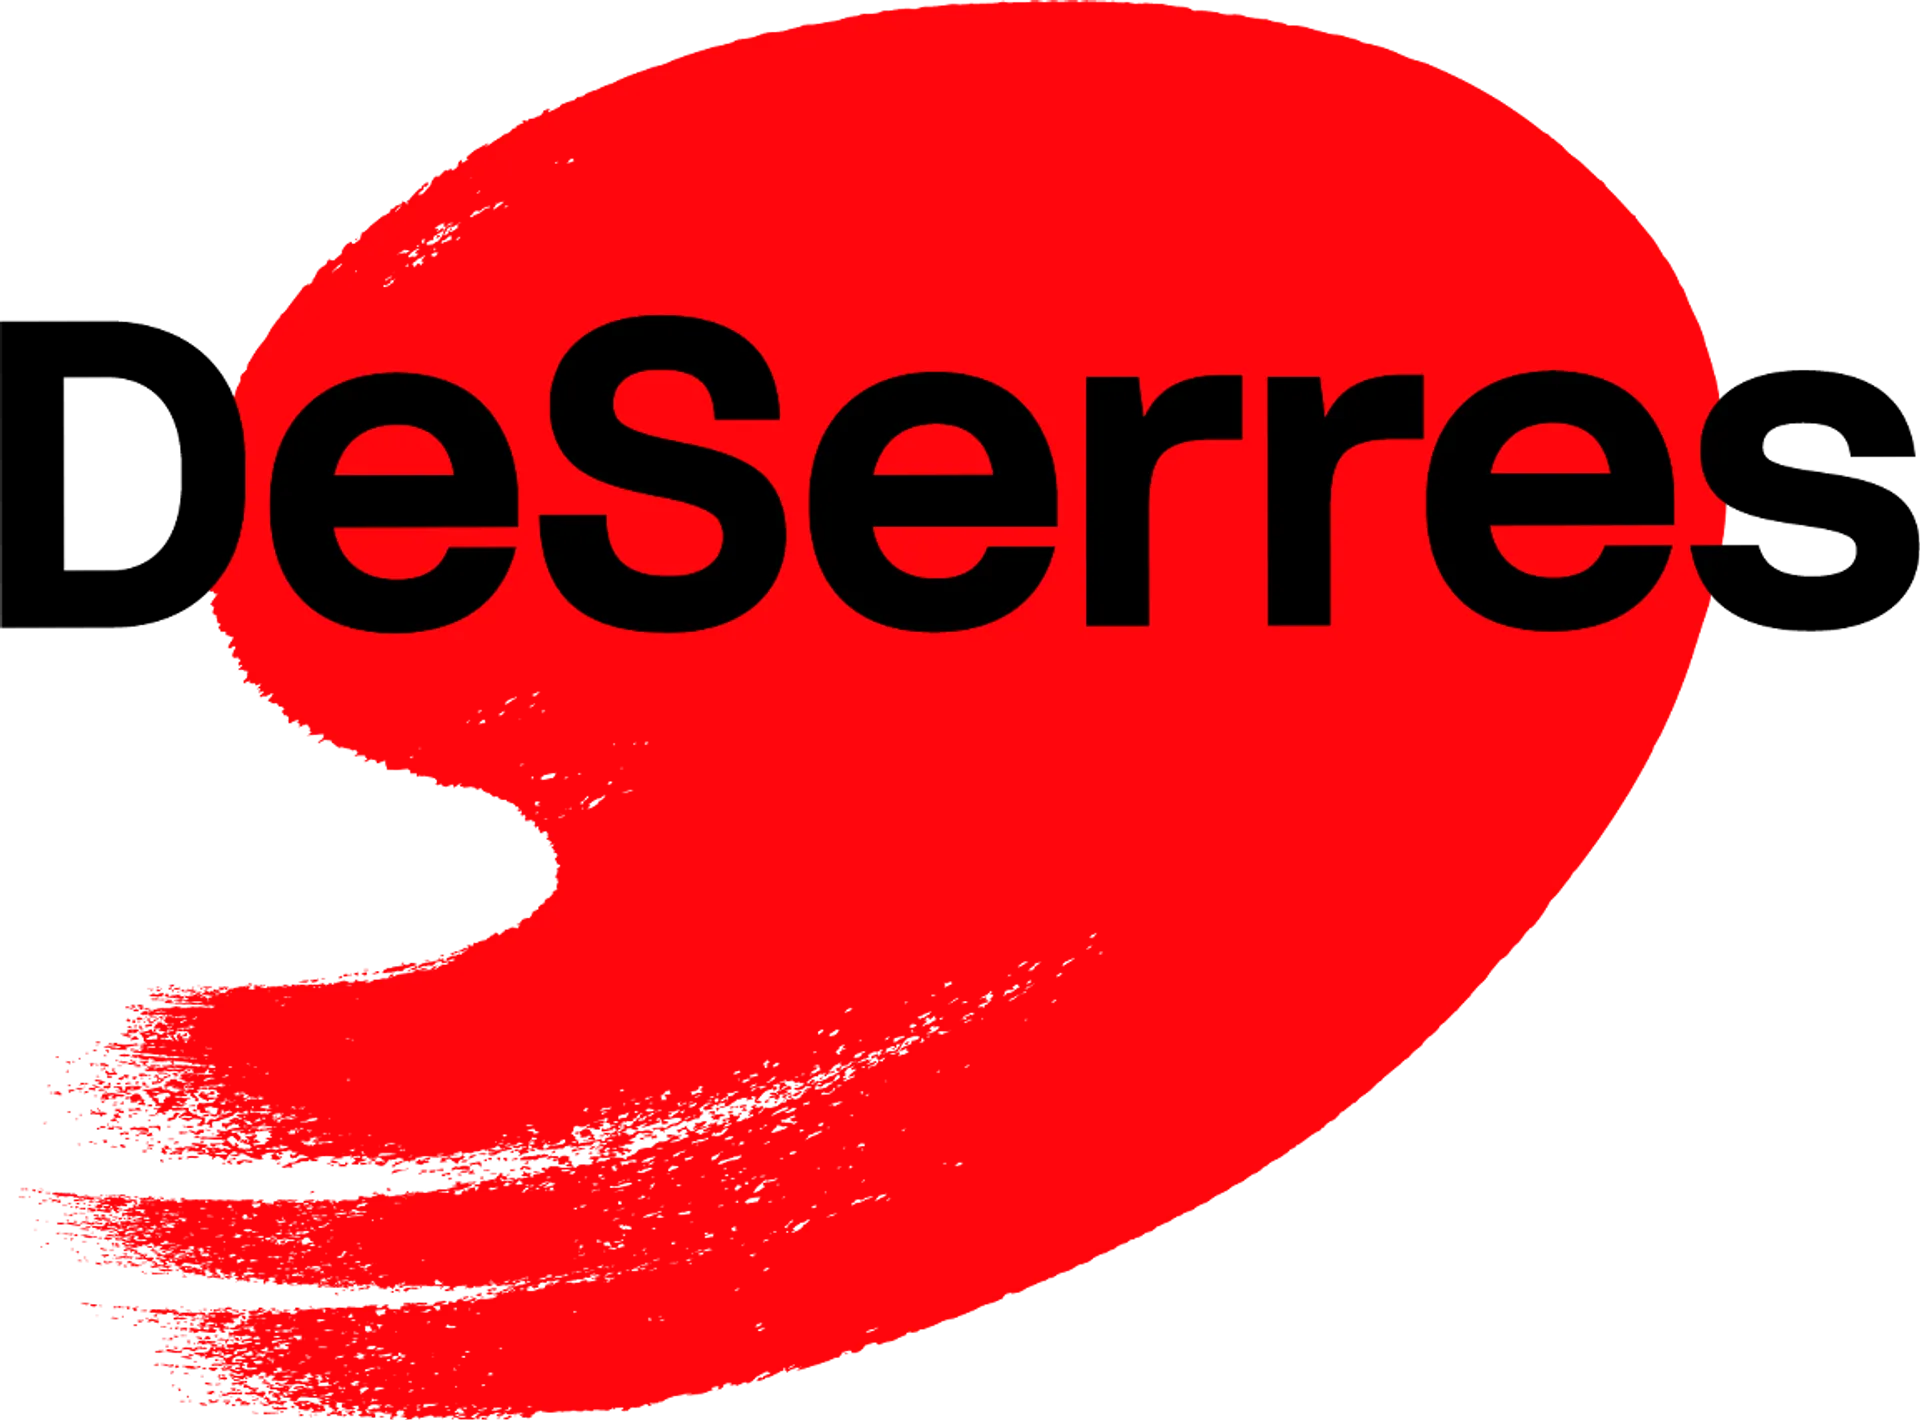 DESERRES logo de circulaire